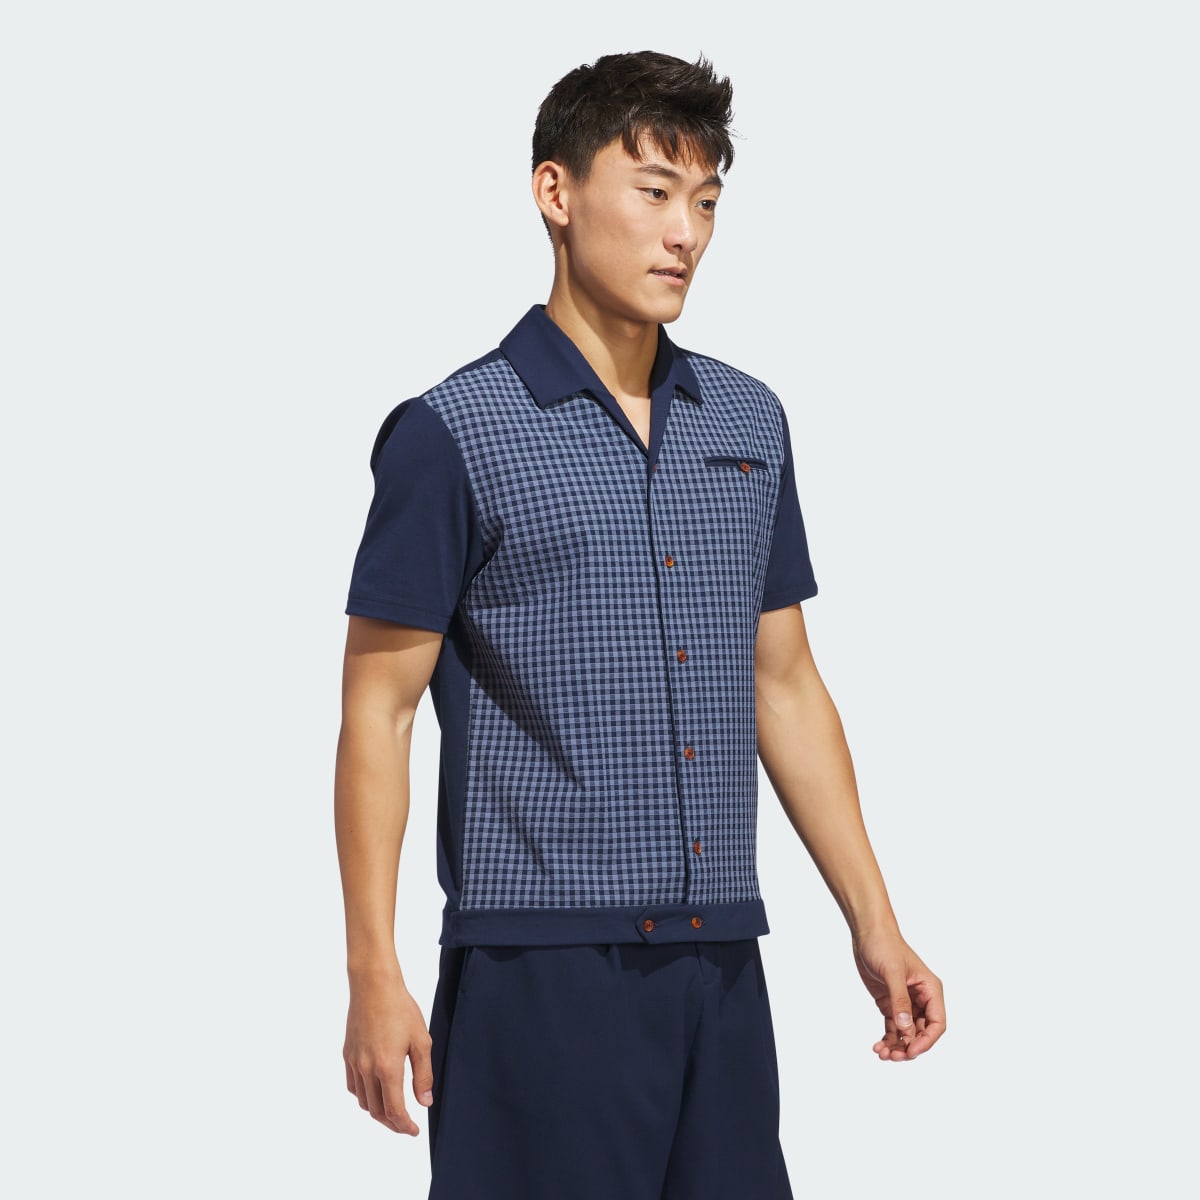 Adidas x Malbon Button Polo Shirt. 4